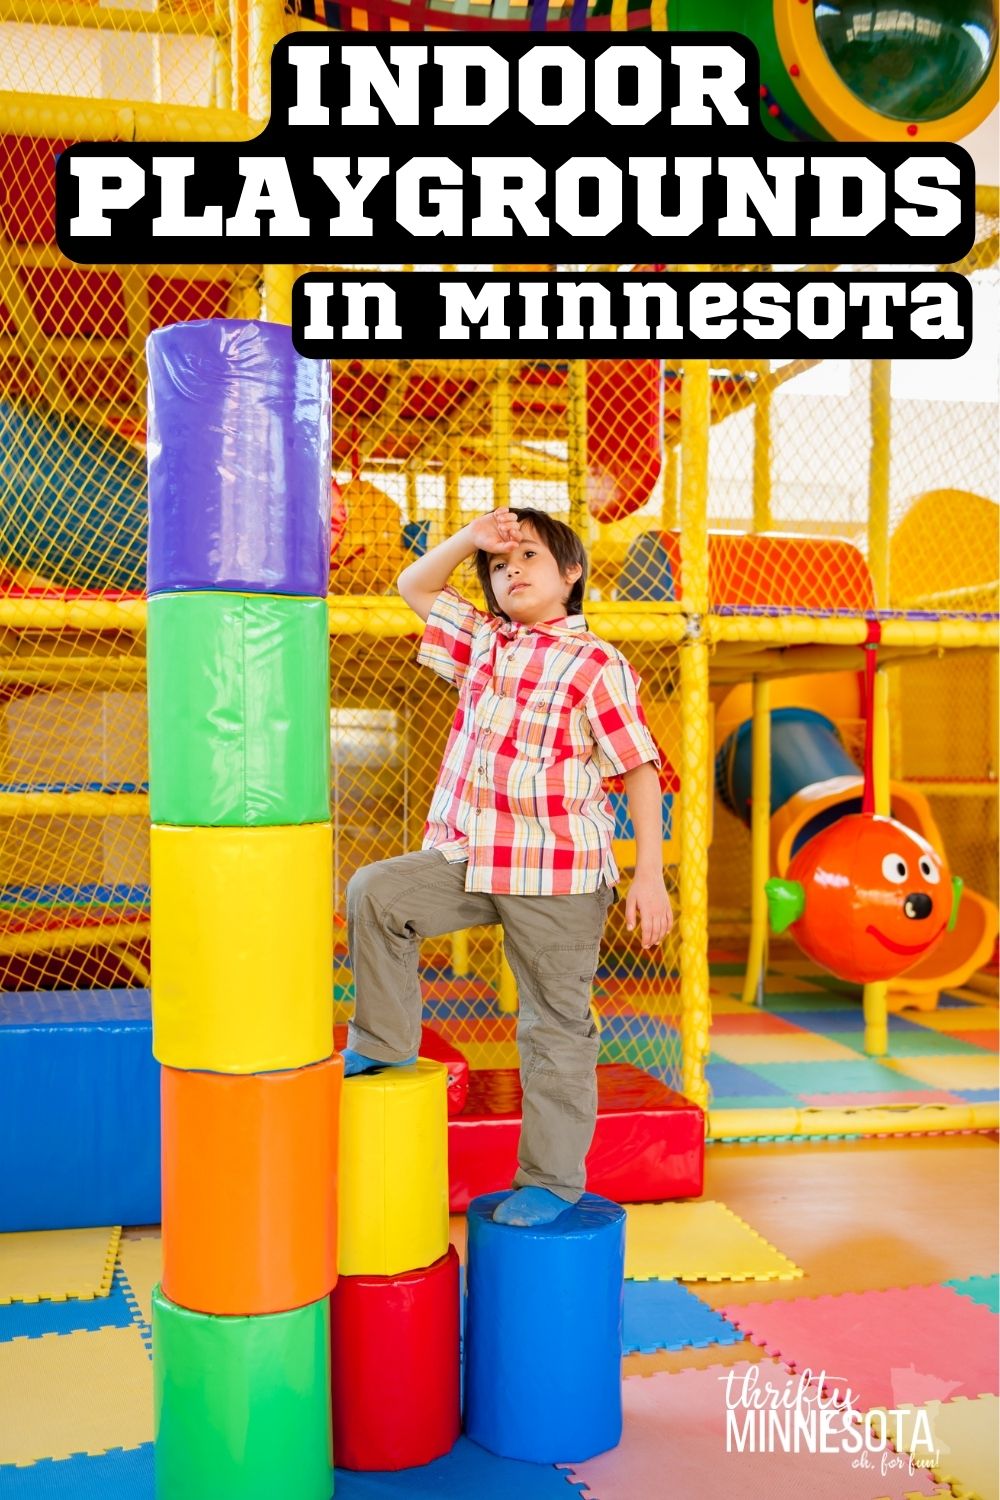 INDOOR PLAYGROUNDS in Minnesota (1).